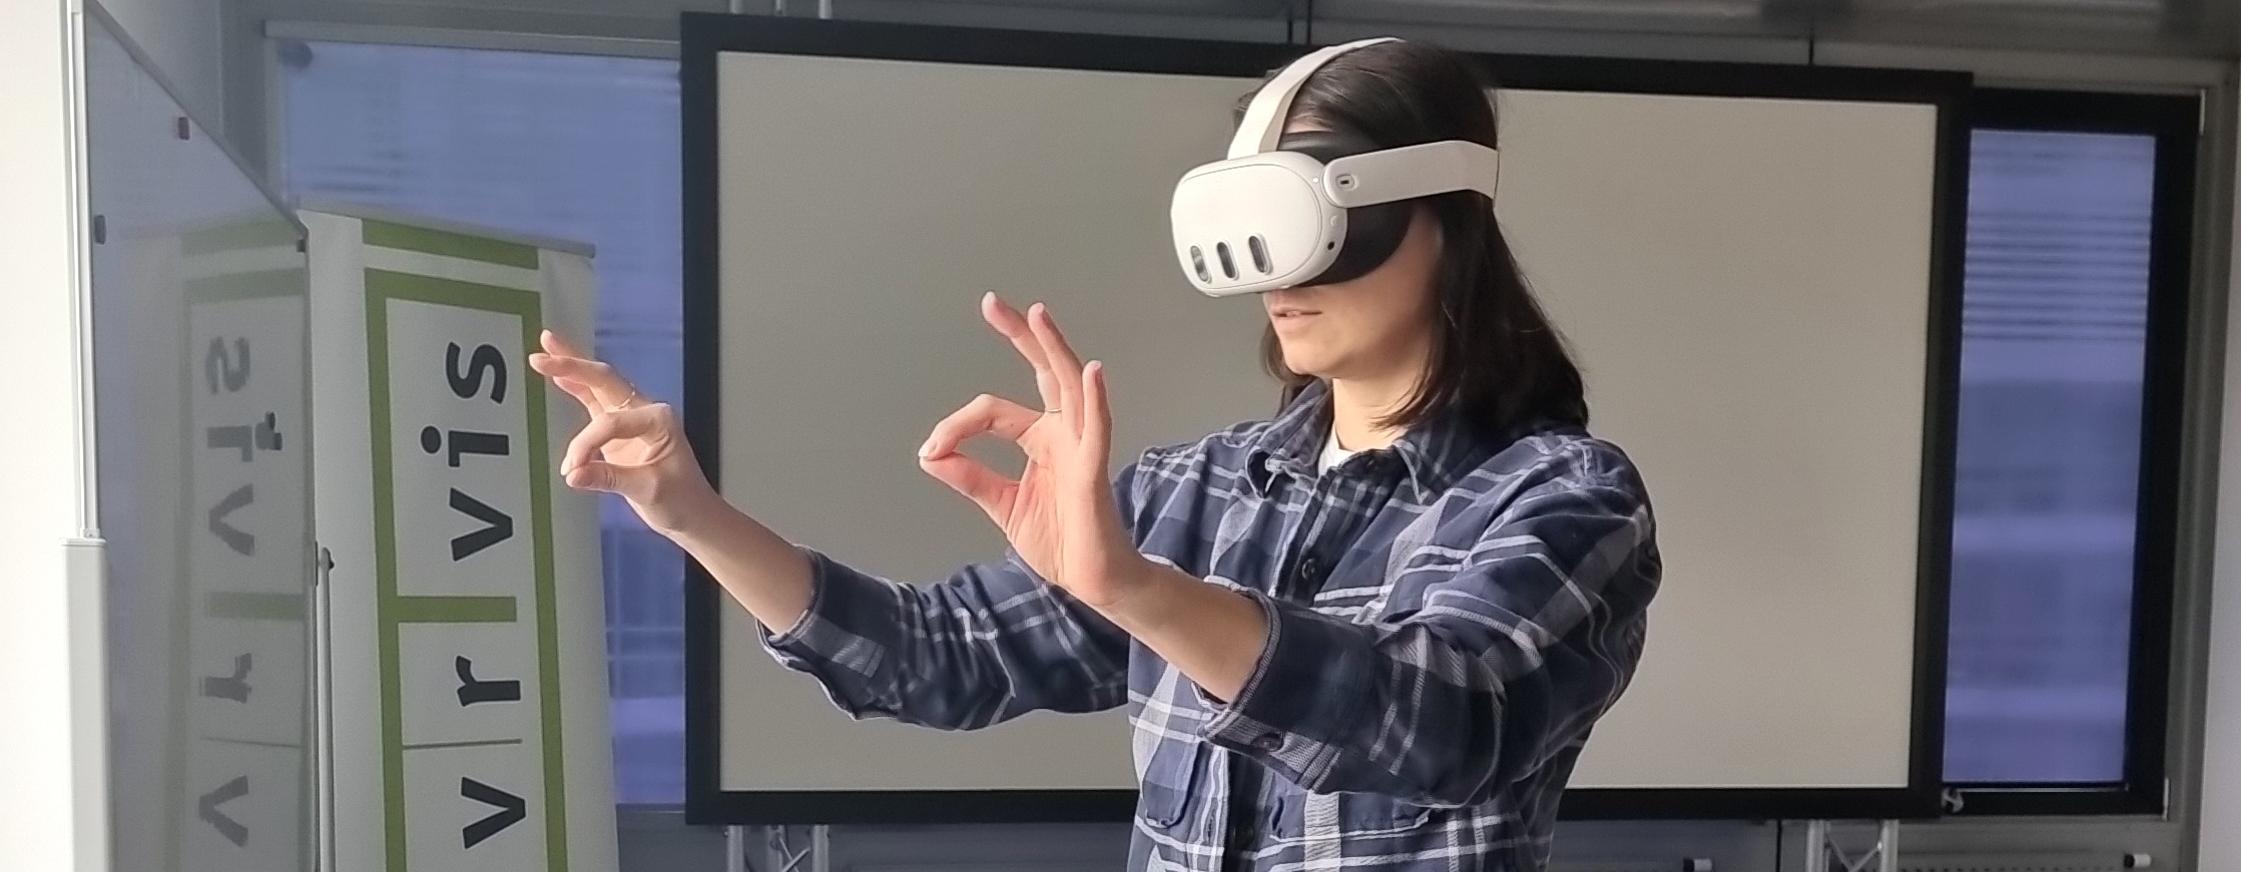 Frau mit Meta Quest 3 Virtual-Reality-Headset macht eine Kneifbewegung in einer Büroumgebung. 